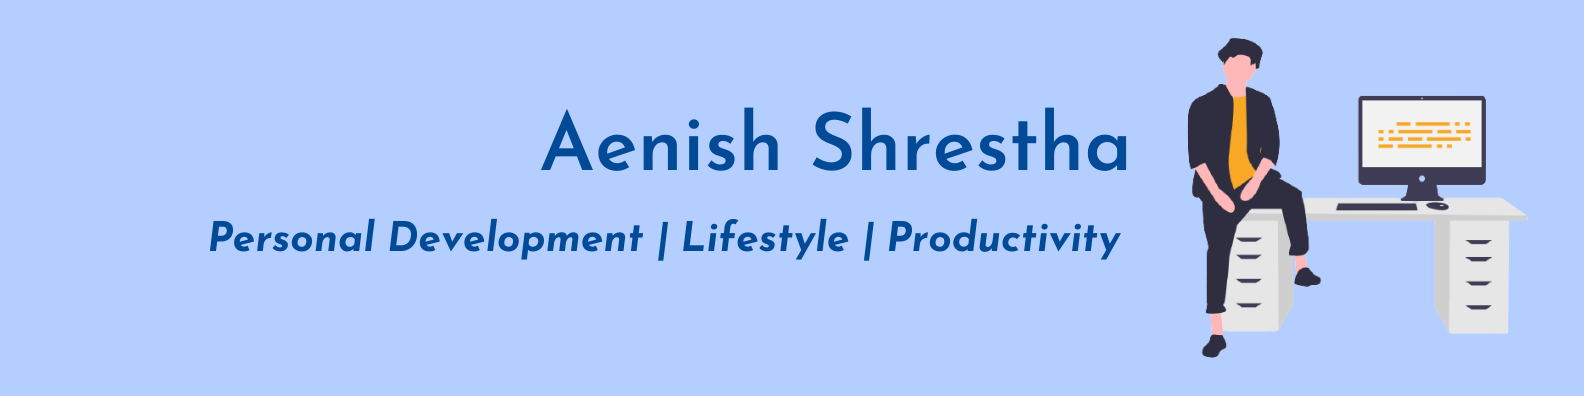 aenish shrestha banner